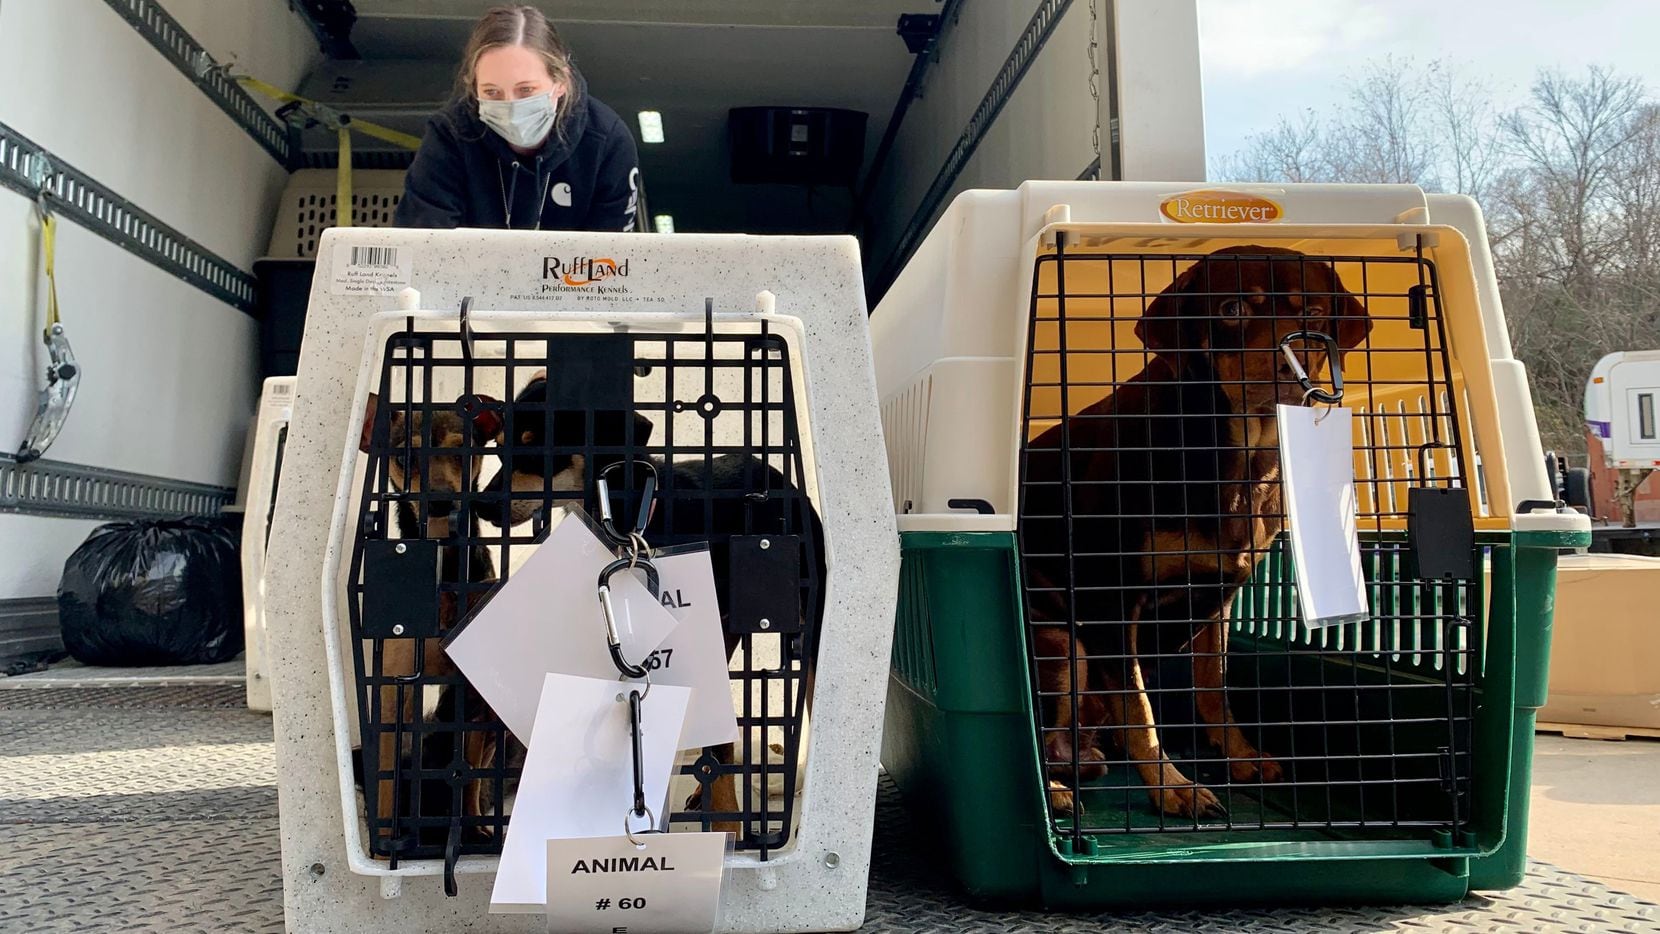 La SPCA de Texas y la Oficina del Sheriff del condado de Hunt confiscaron docenas de gatos y perros después de que las agencias recibieron una denuncia de crueldad animal el domingo 9 de enero de 2022 en el condado de Hunt.